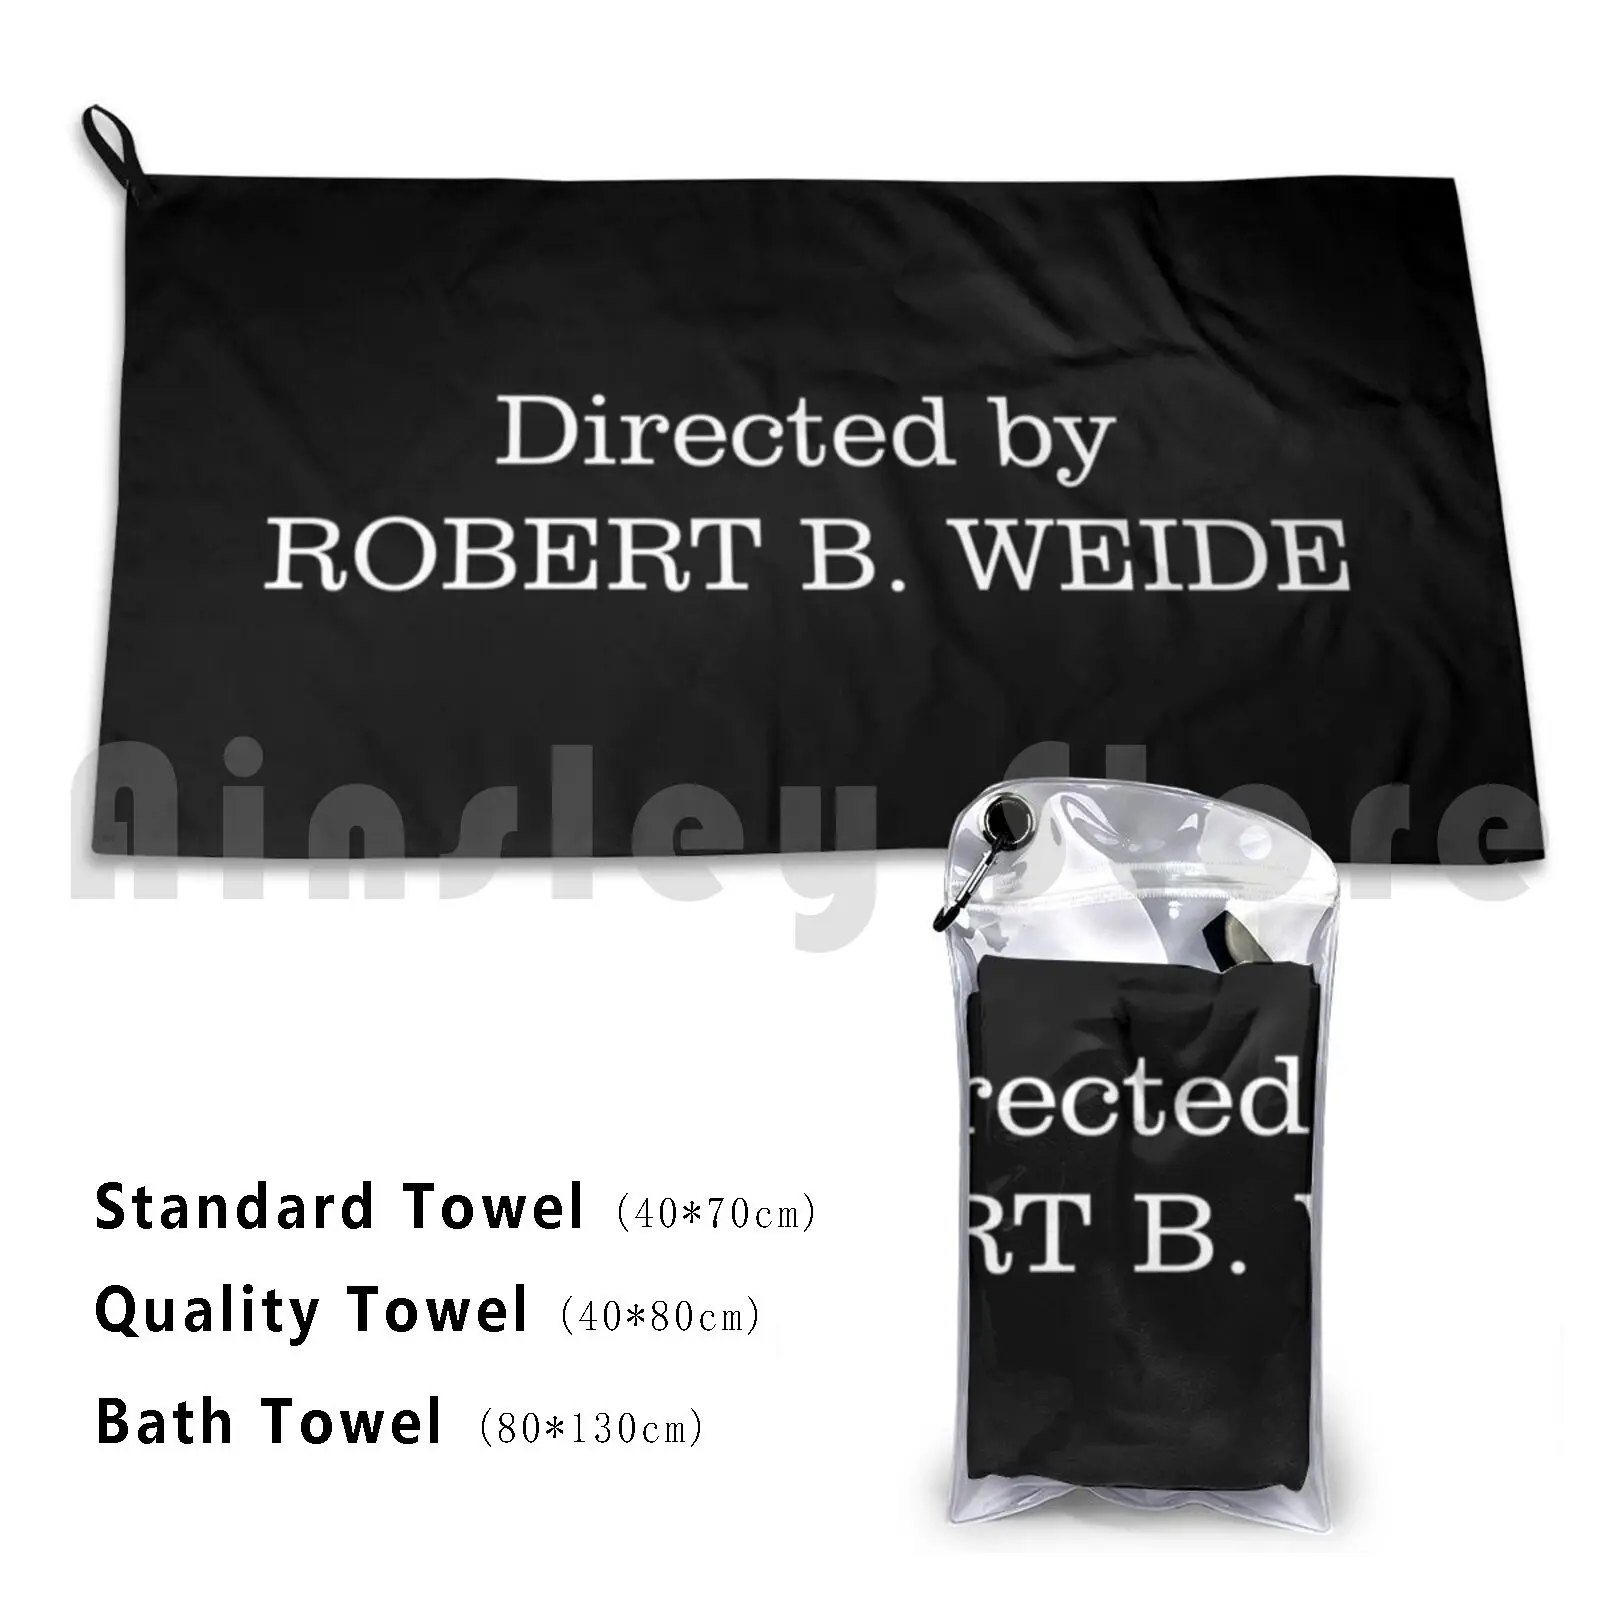 

Directed By Robert B. Weide ( Original Font ) Bath Towel Beach Cushion Directed By Robert B Weide Popular